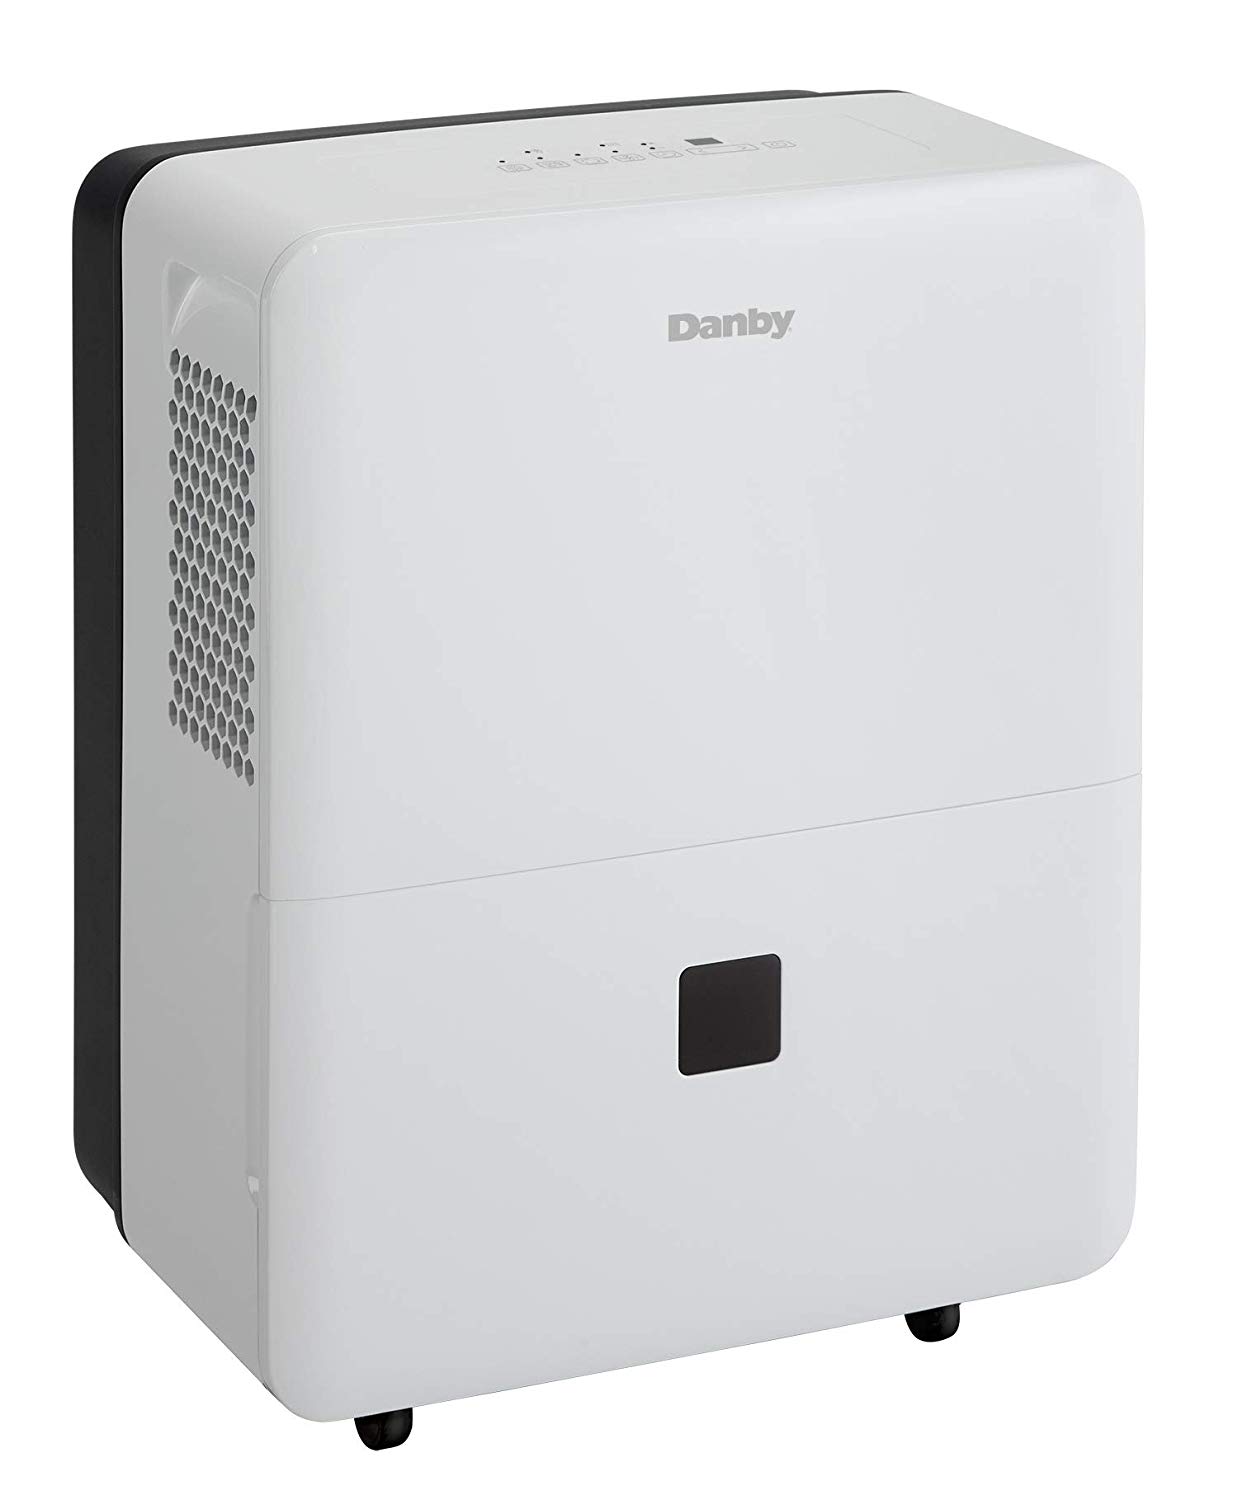 Danby DDR030BDWDB Energy Star 30 파인트 제습기